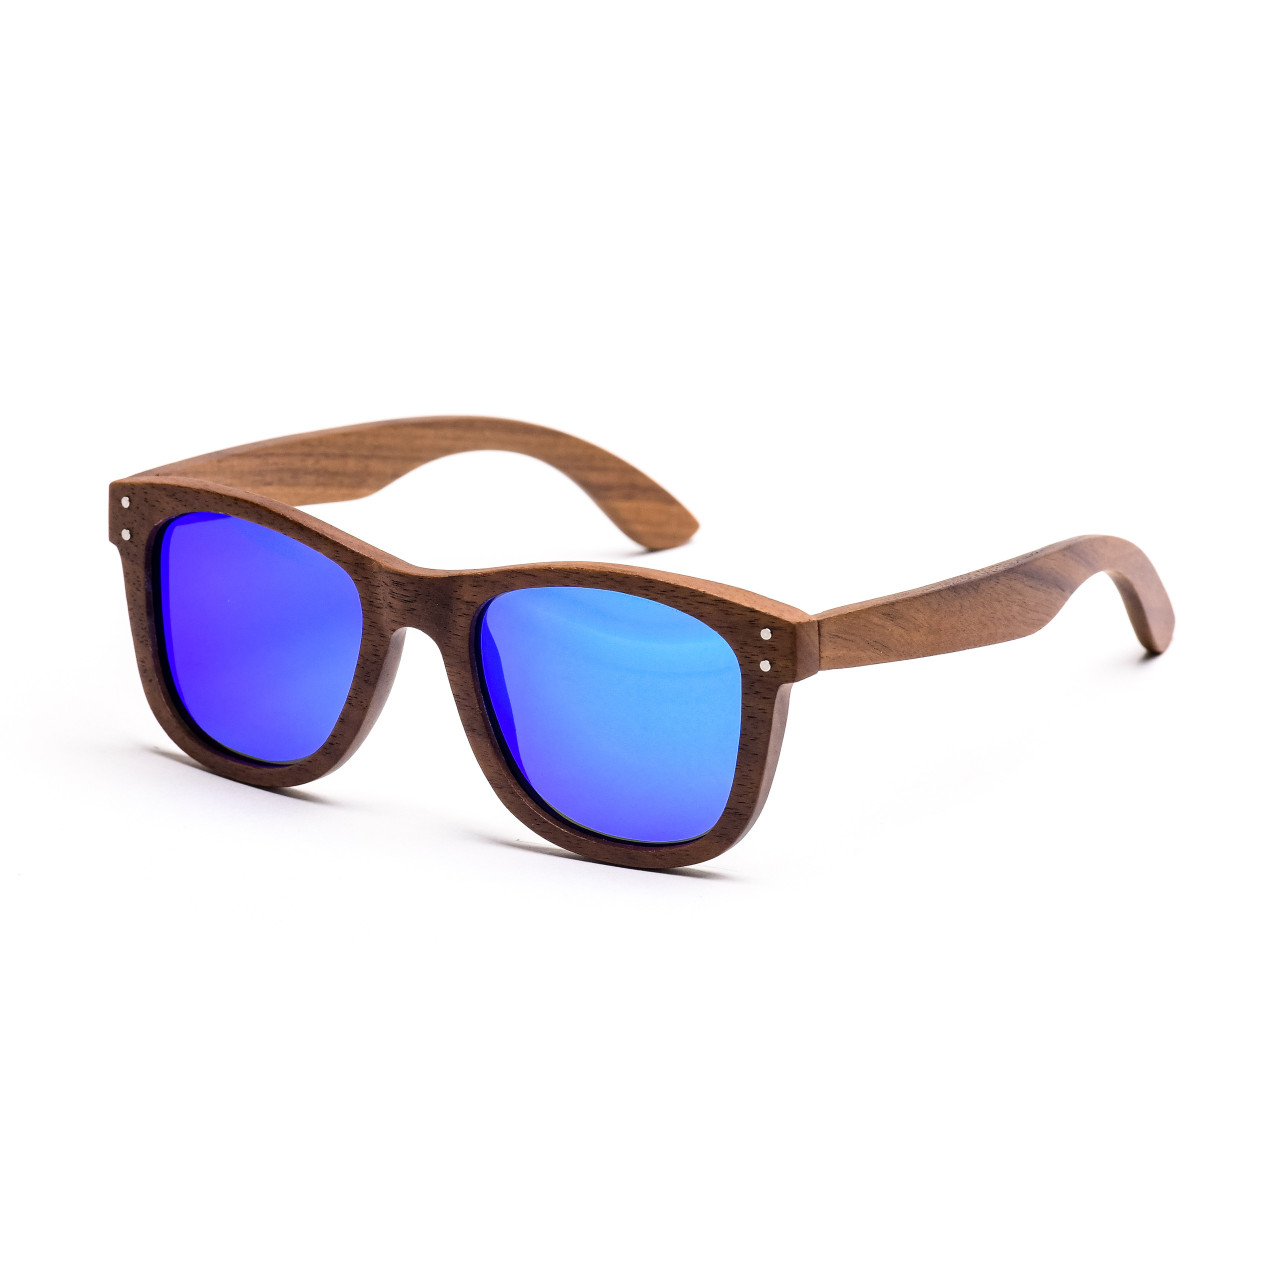 Brýle Wood – modré čočky + tmavý ořech